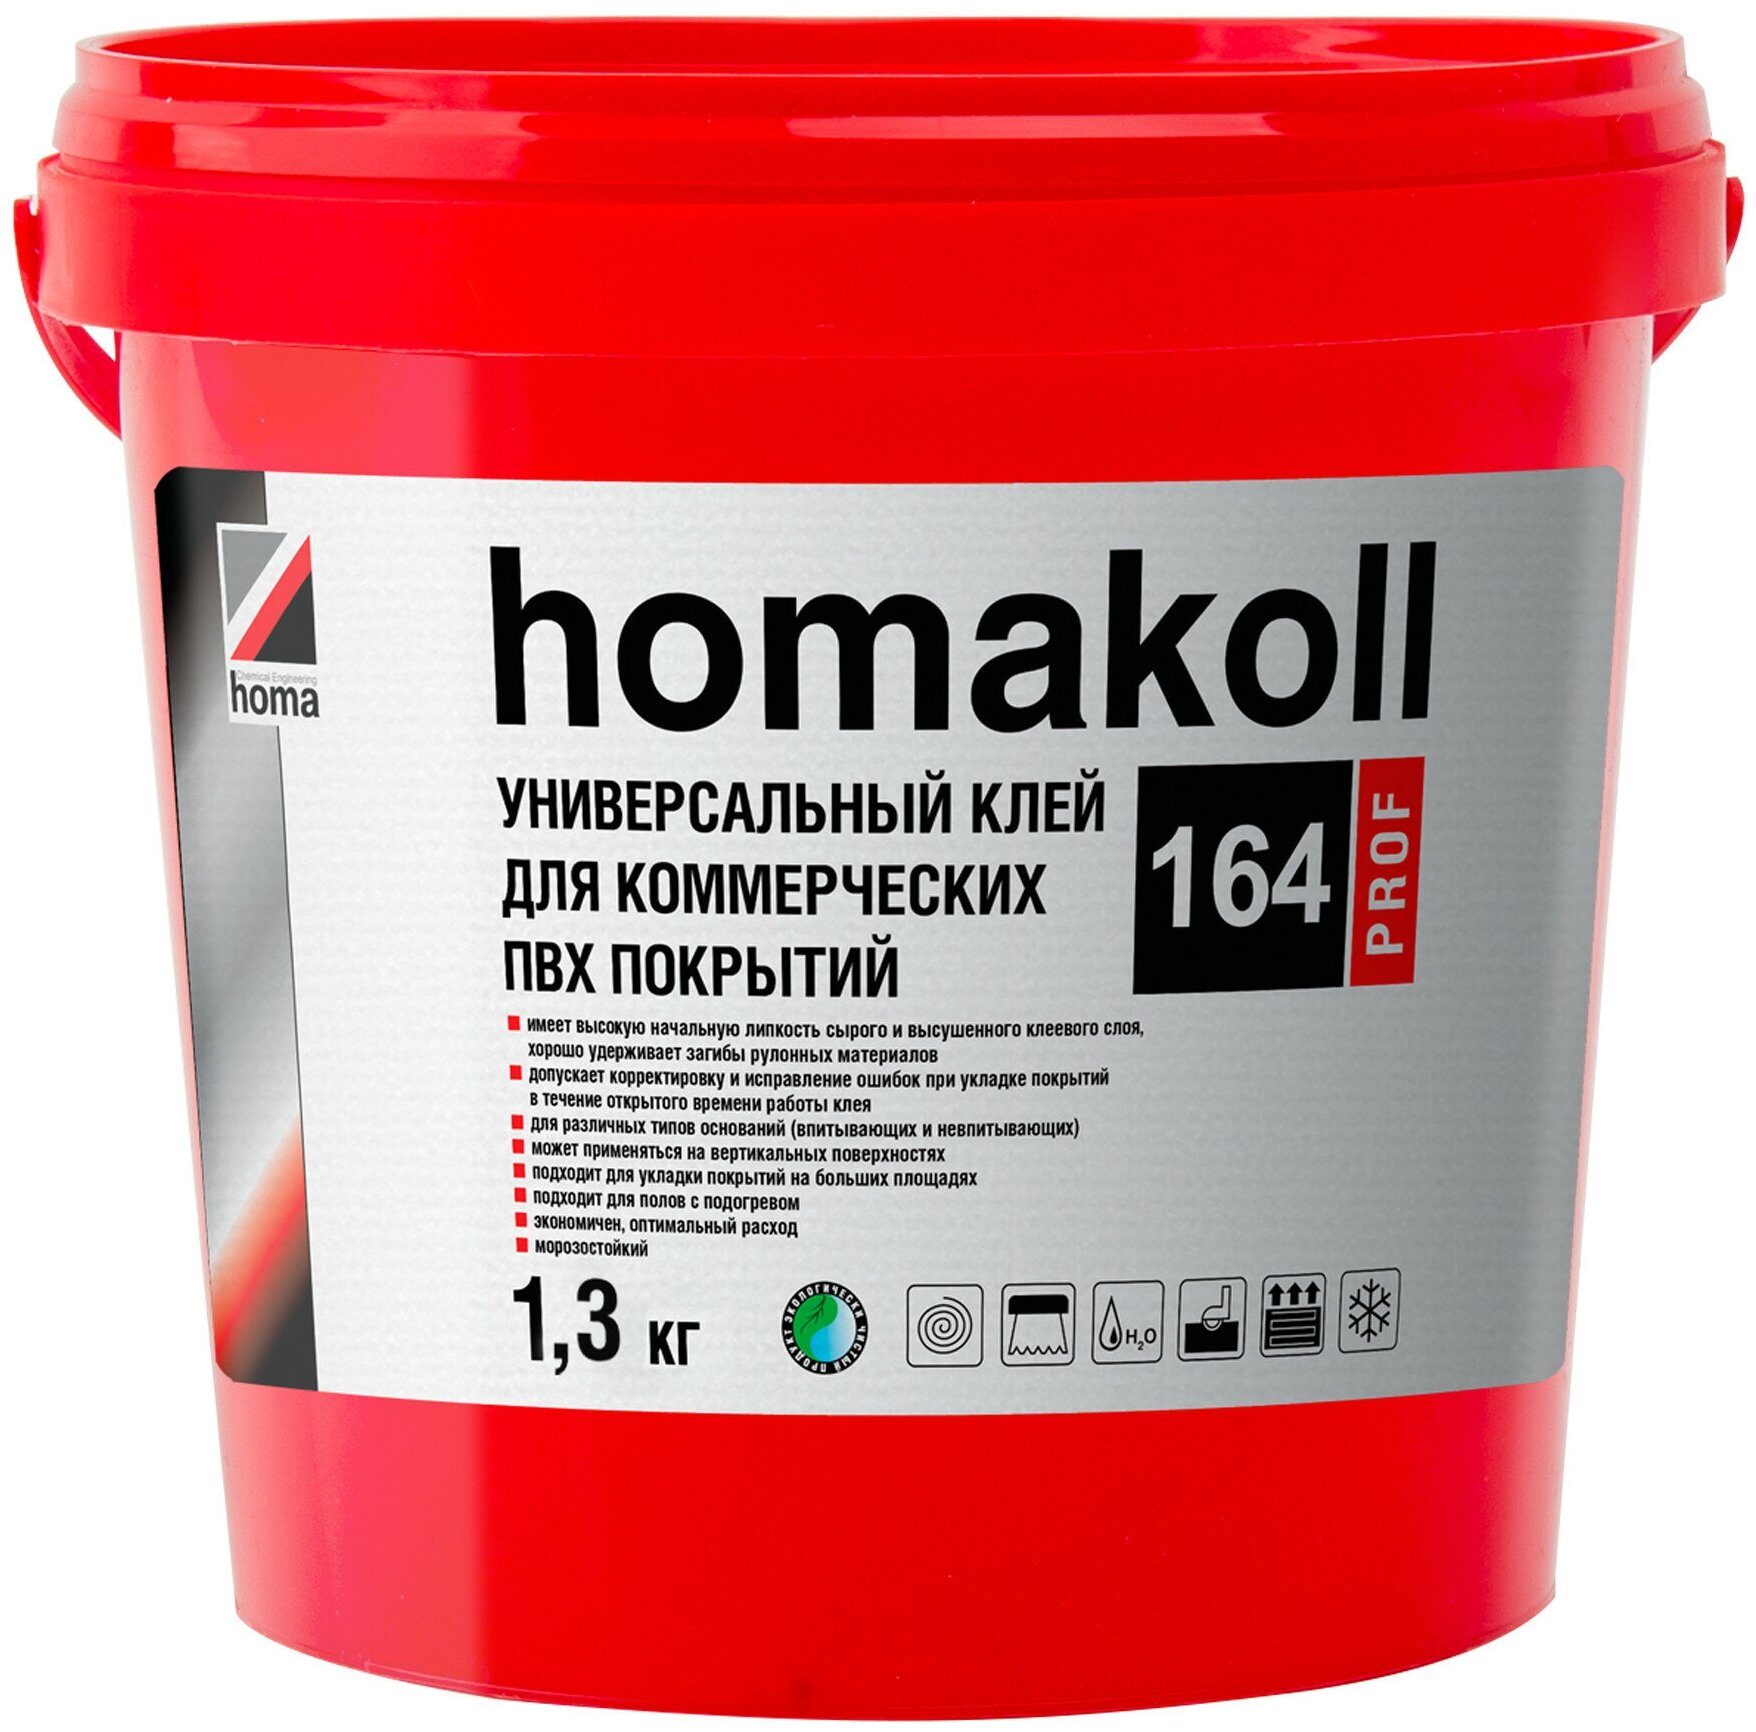 Homakoll Клей 164 Prof, 1,3 кг. 300-350гр/м2, для коммер. линолеума 71158